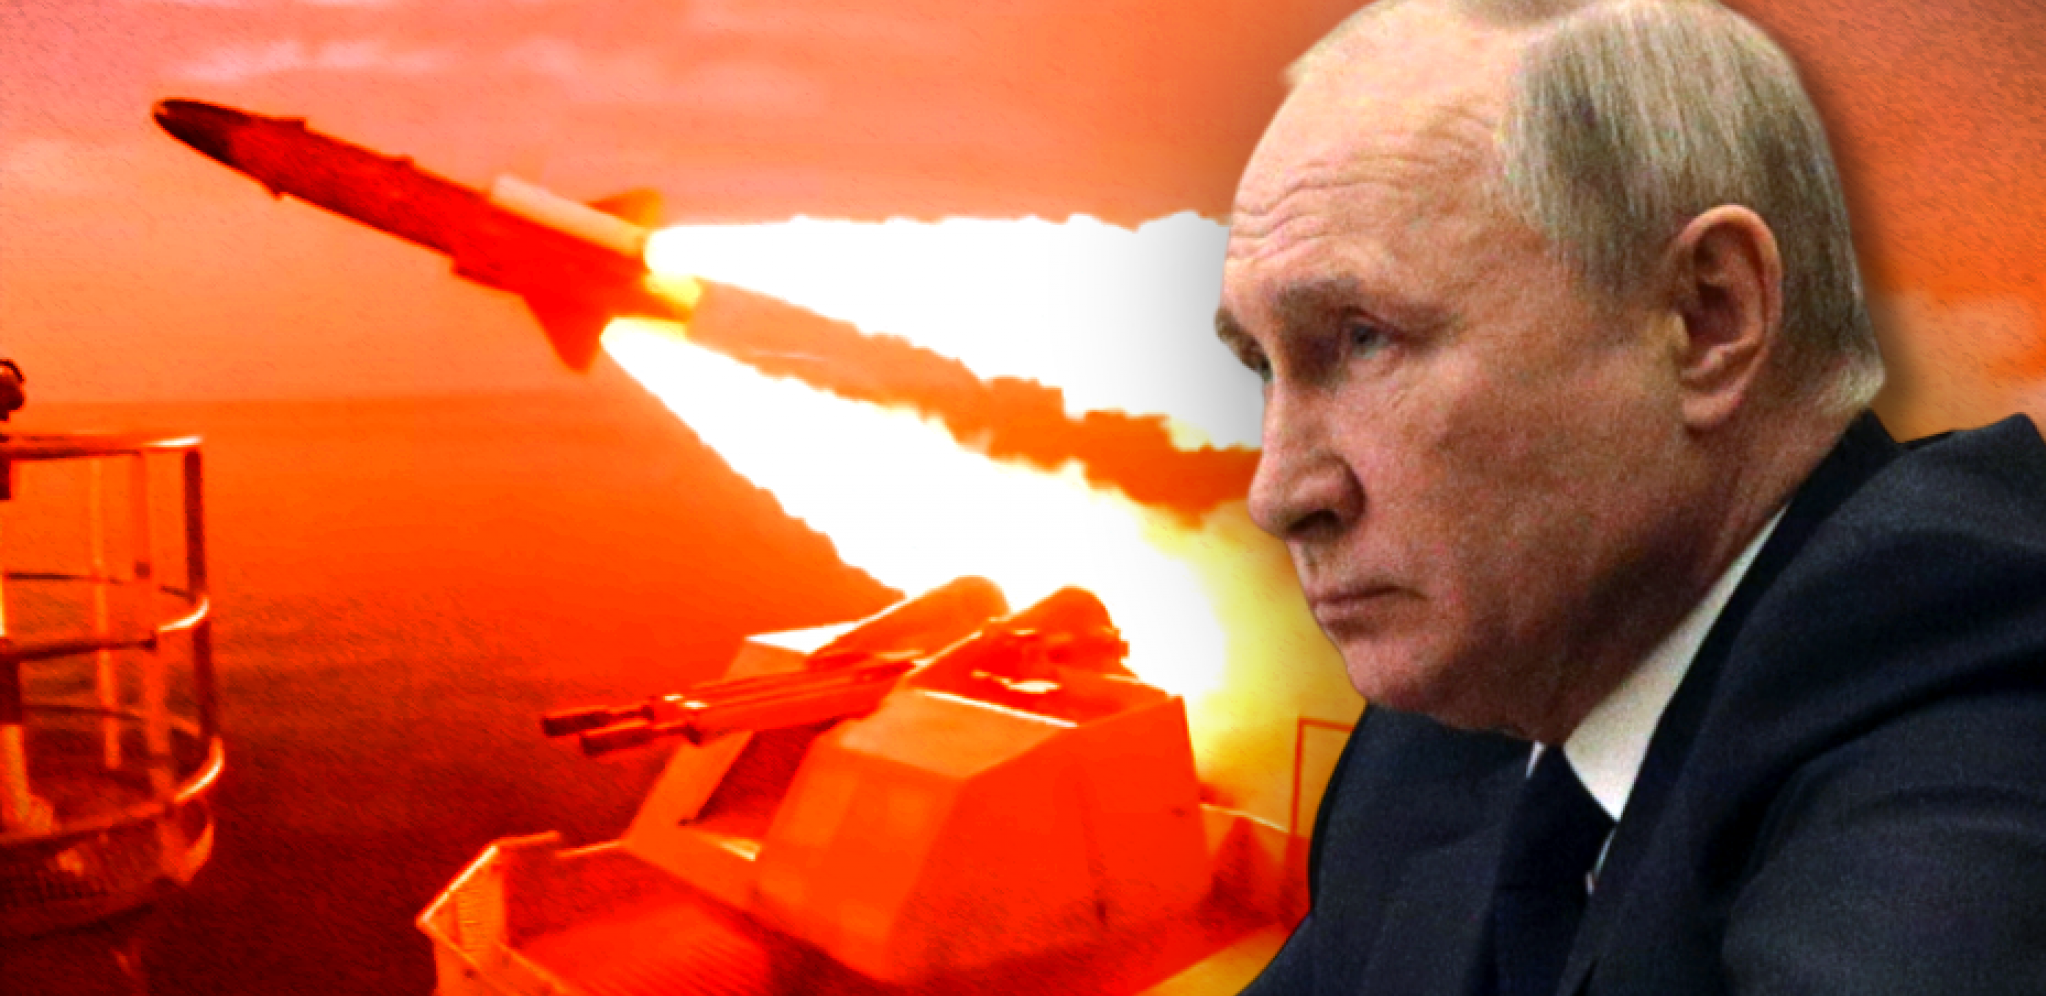 CIA DALA KOORDINATE ZA UDARE NA RUSIJU! Čeka se odgovor Putina